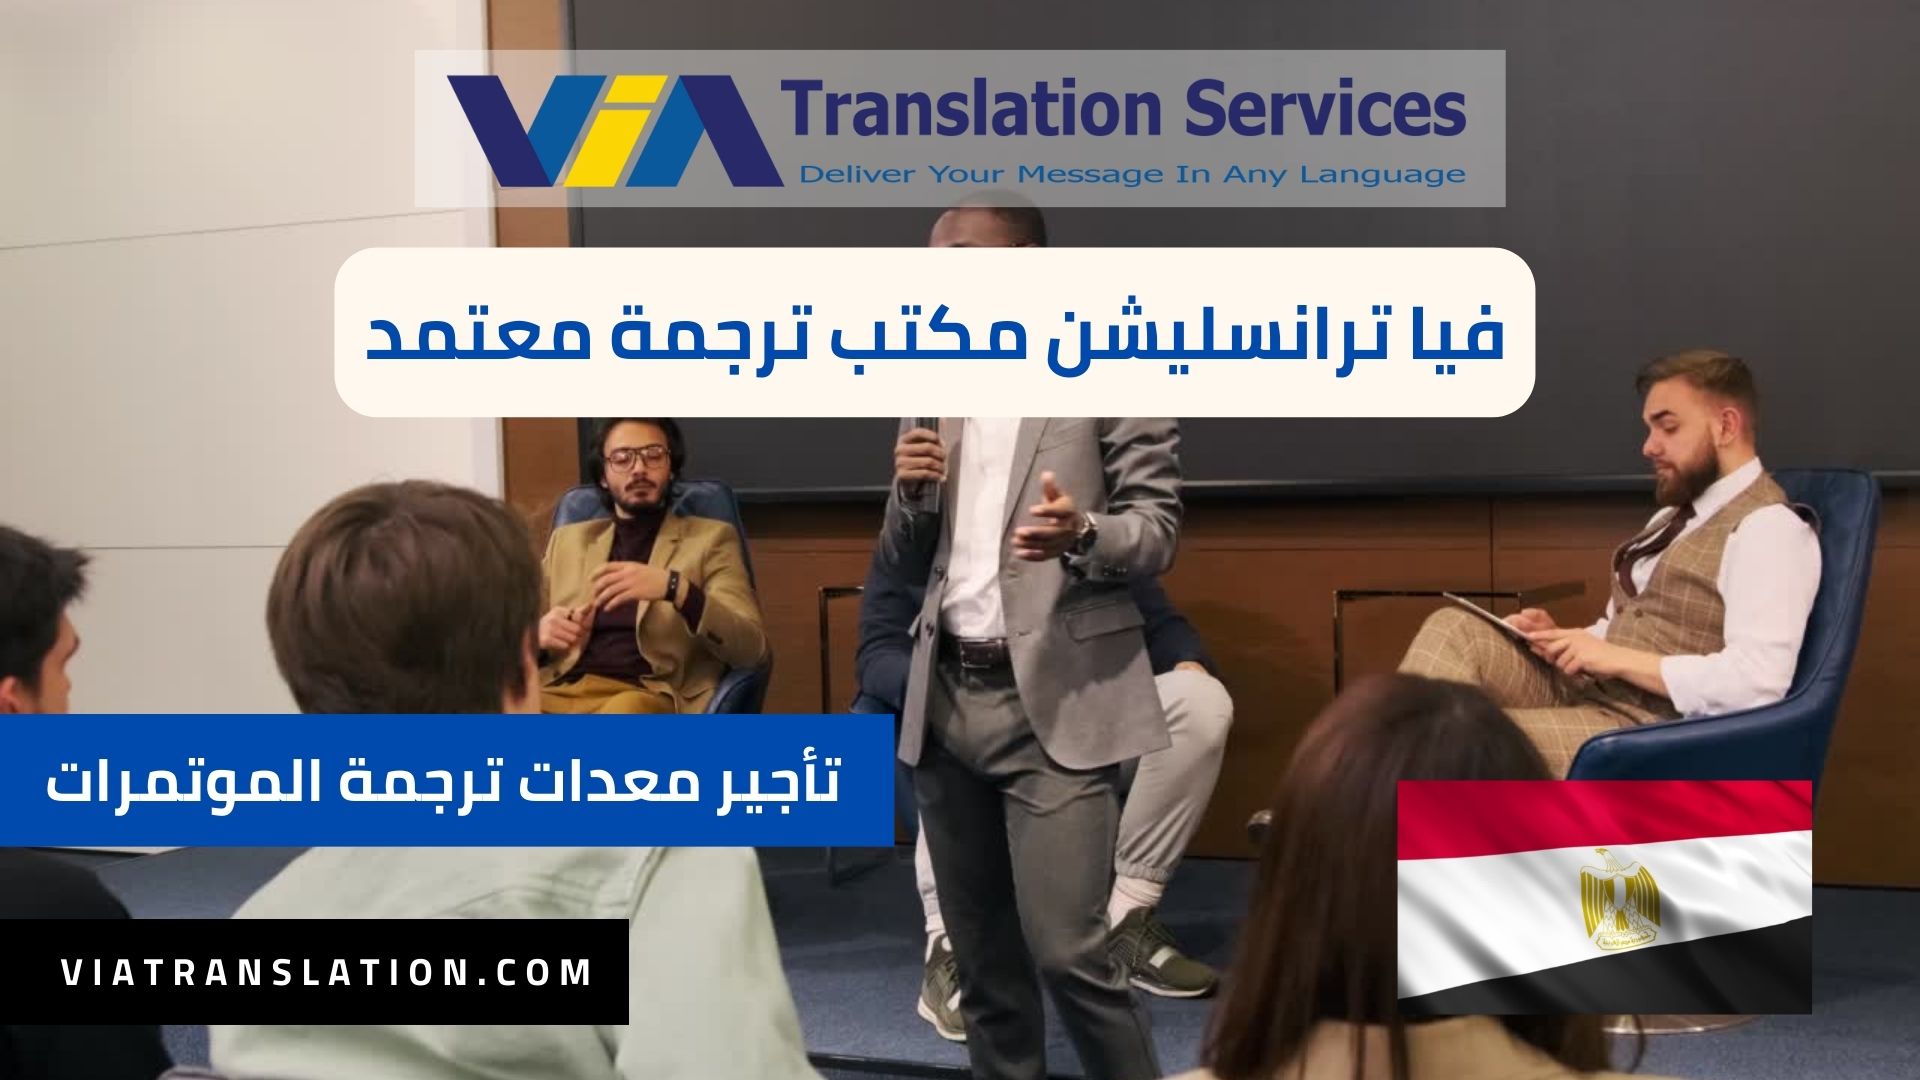 أفضل خدمات تأجير معدات ترجمة المؤتمرات و أجهزة تنظيم المؤتمرات الدولية في مصر 2023